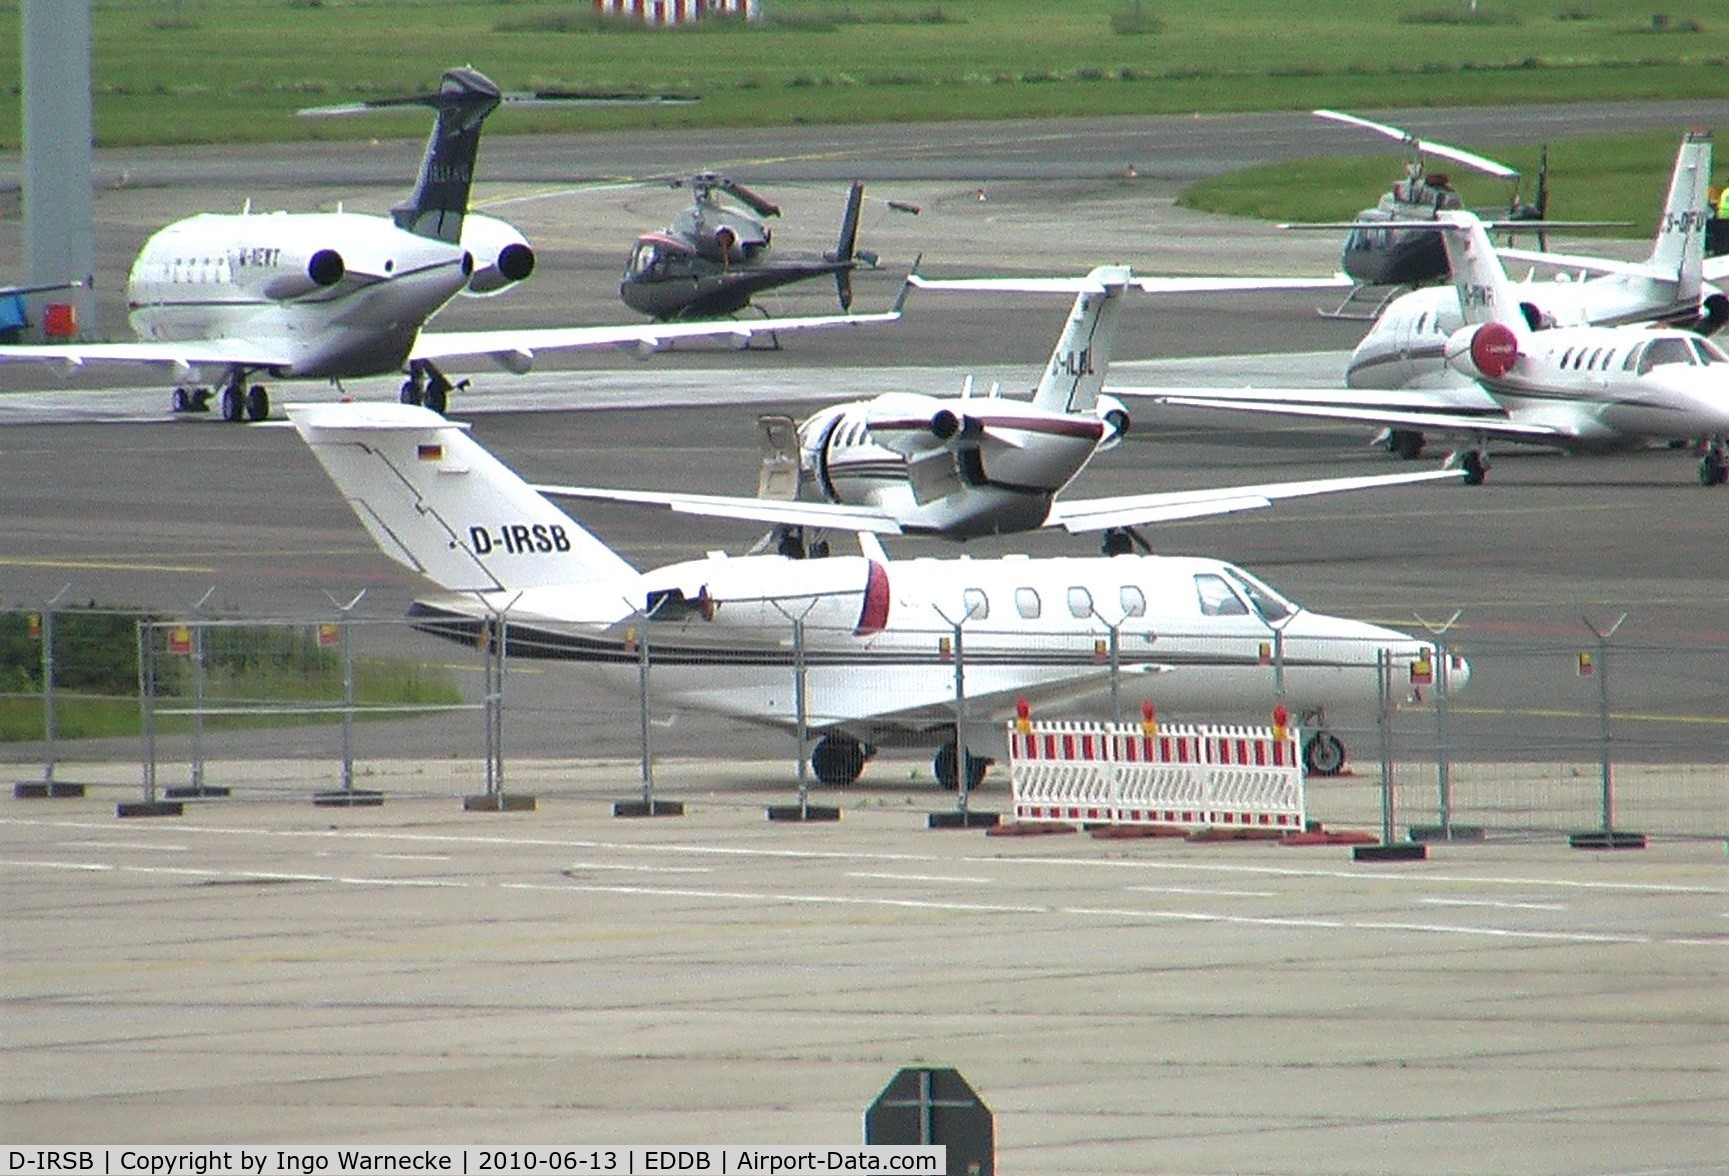 D-IRSB, 2001 Cessna 525 CitationJet CJ1 C/N 525-0476, Cessna 525 CitationJet CJ1 at Schönefeld airport